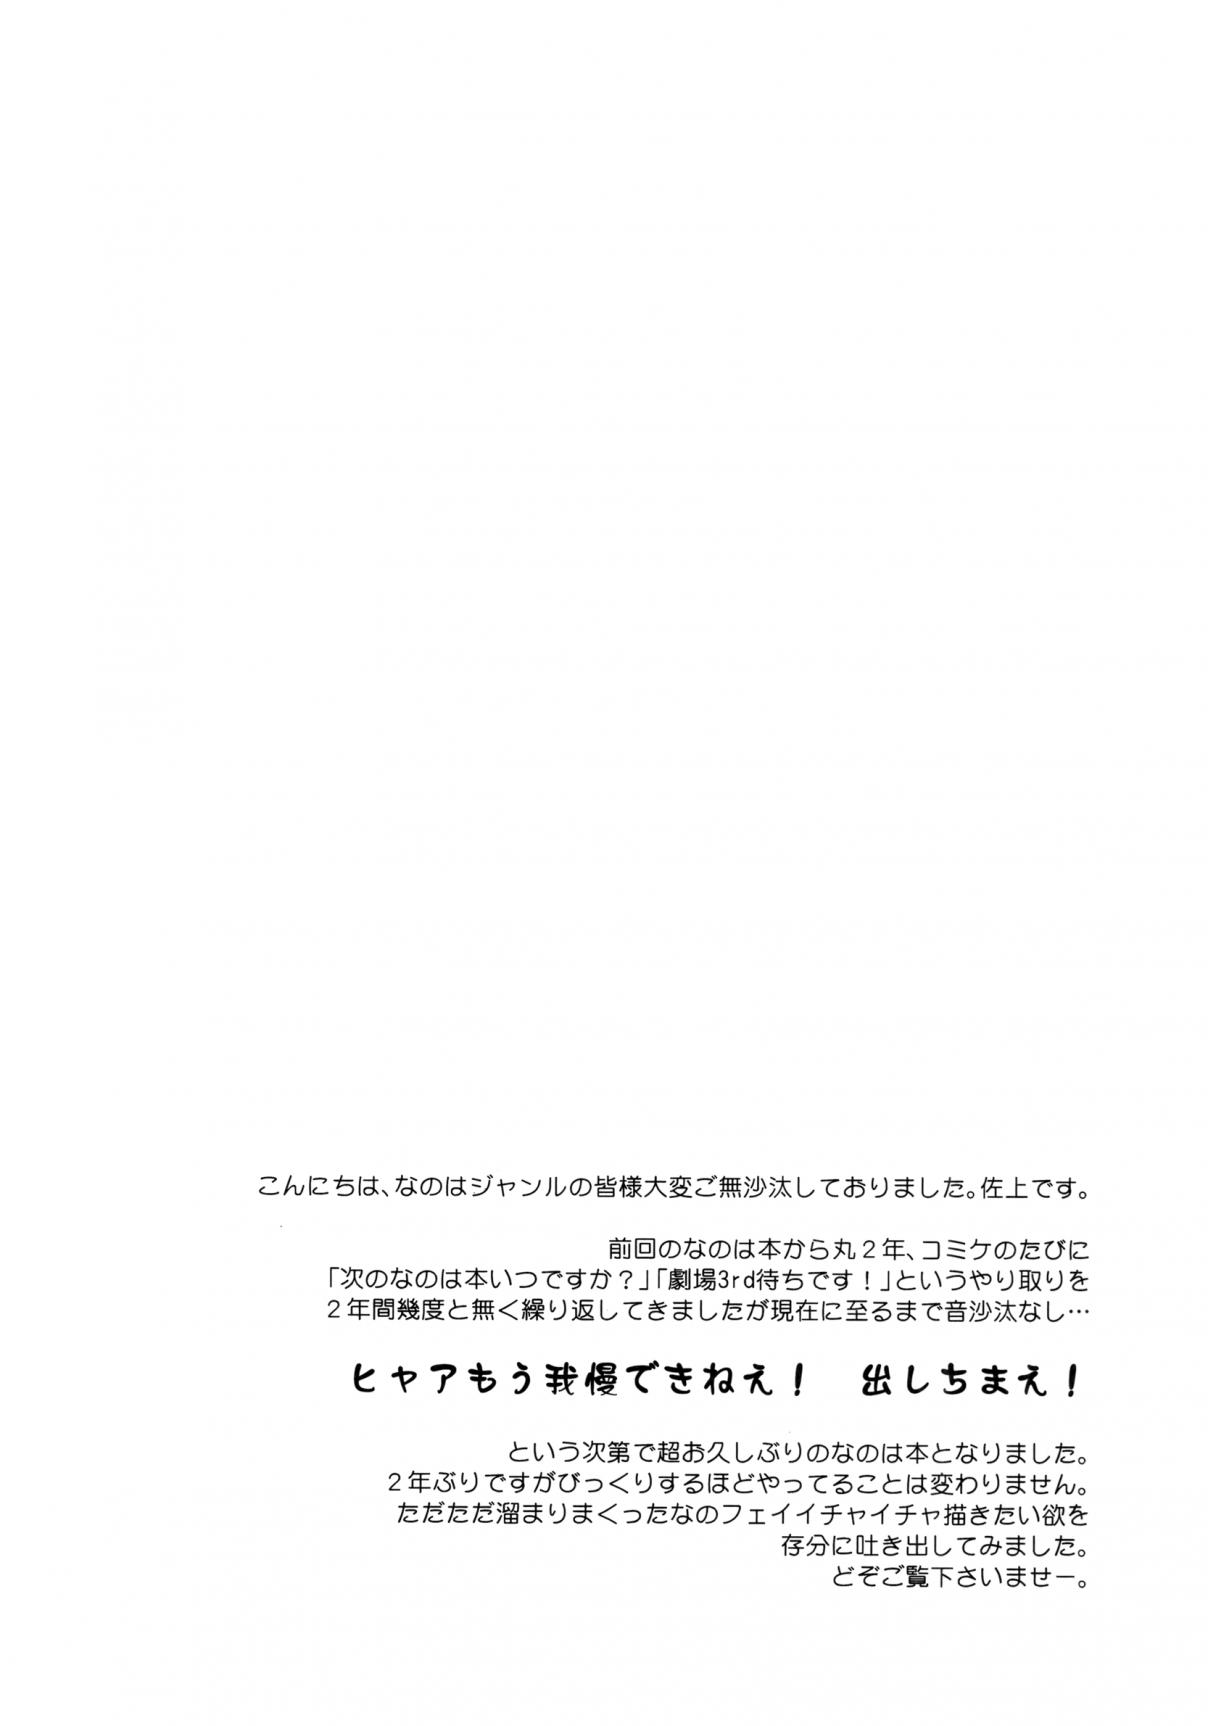 Mahou Shoujo Lyrical Nanoha When The Starry Night Comes (Doujinshi) Oneshot